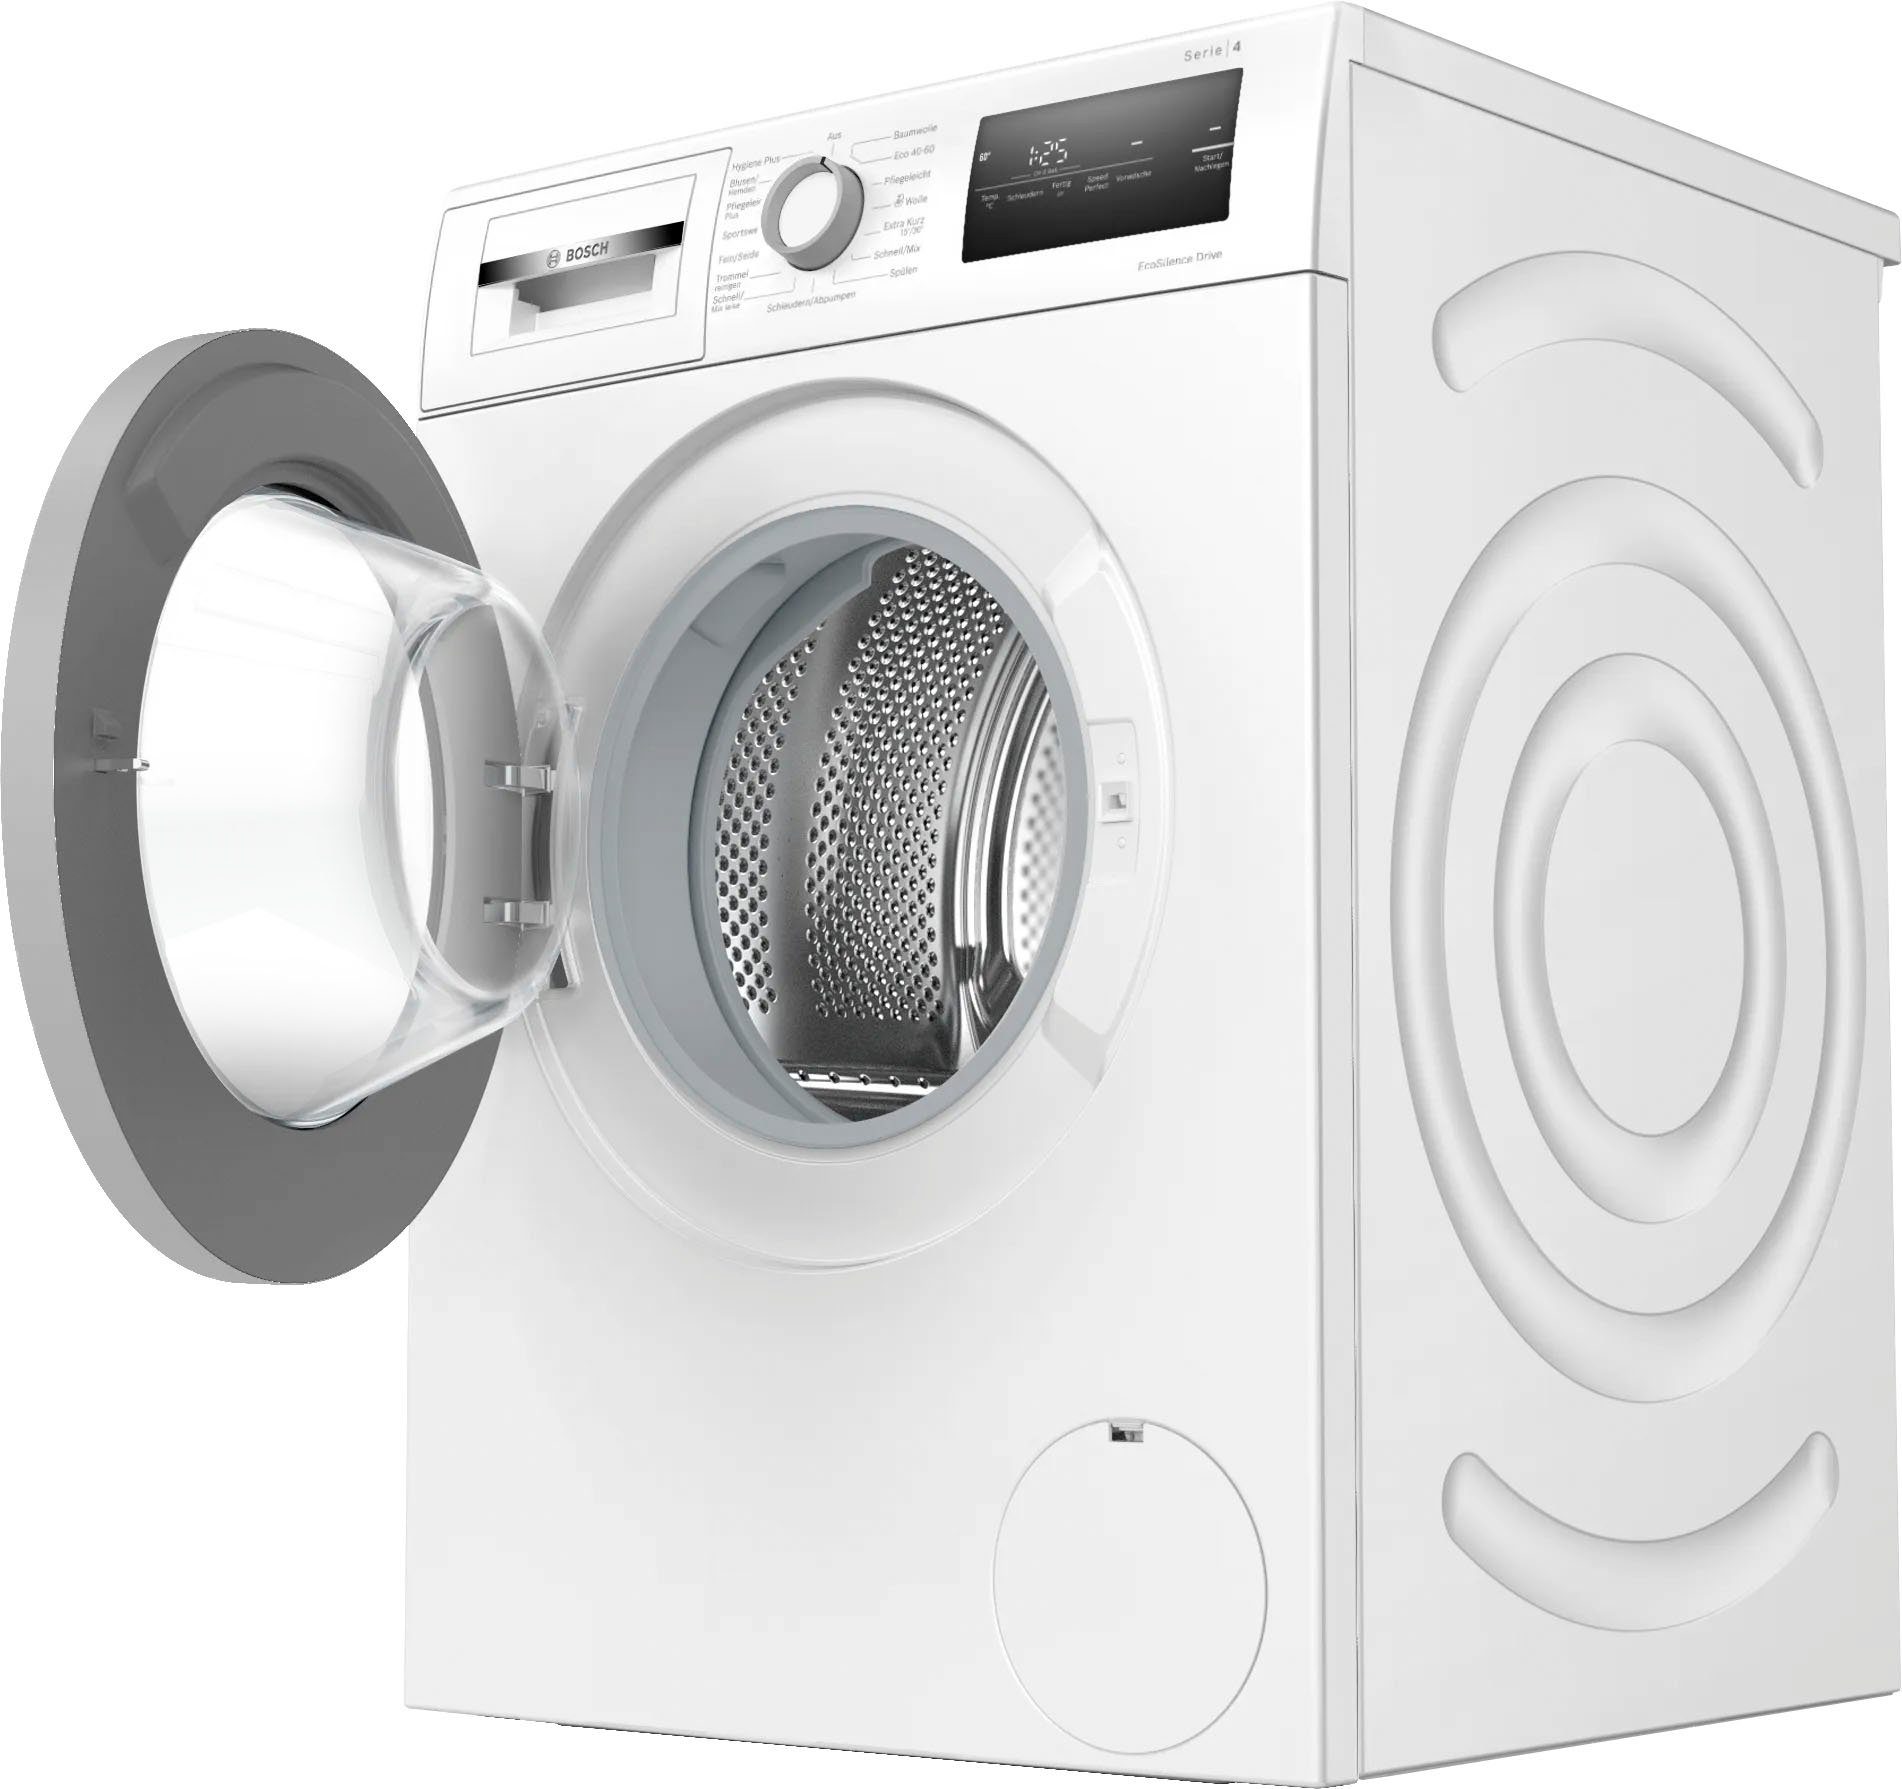 Waschmaschinenantrieb Silence Eco kg, Serie 8 WAN28129, BOSCH Drive™: 4 so 1400 und Waschmaschine ein muss robust effizient U/min,